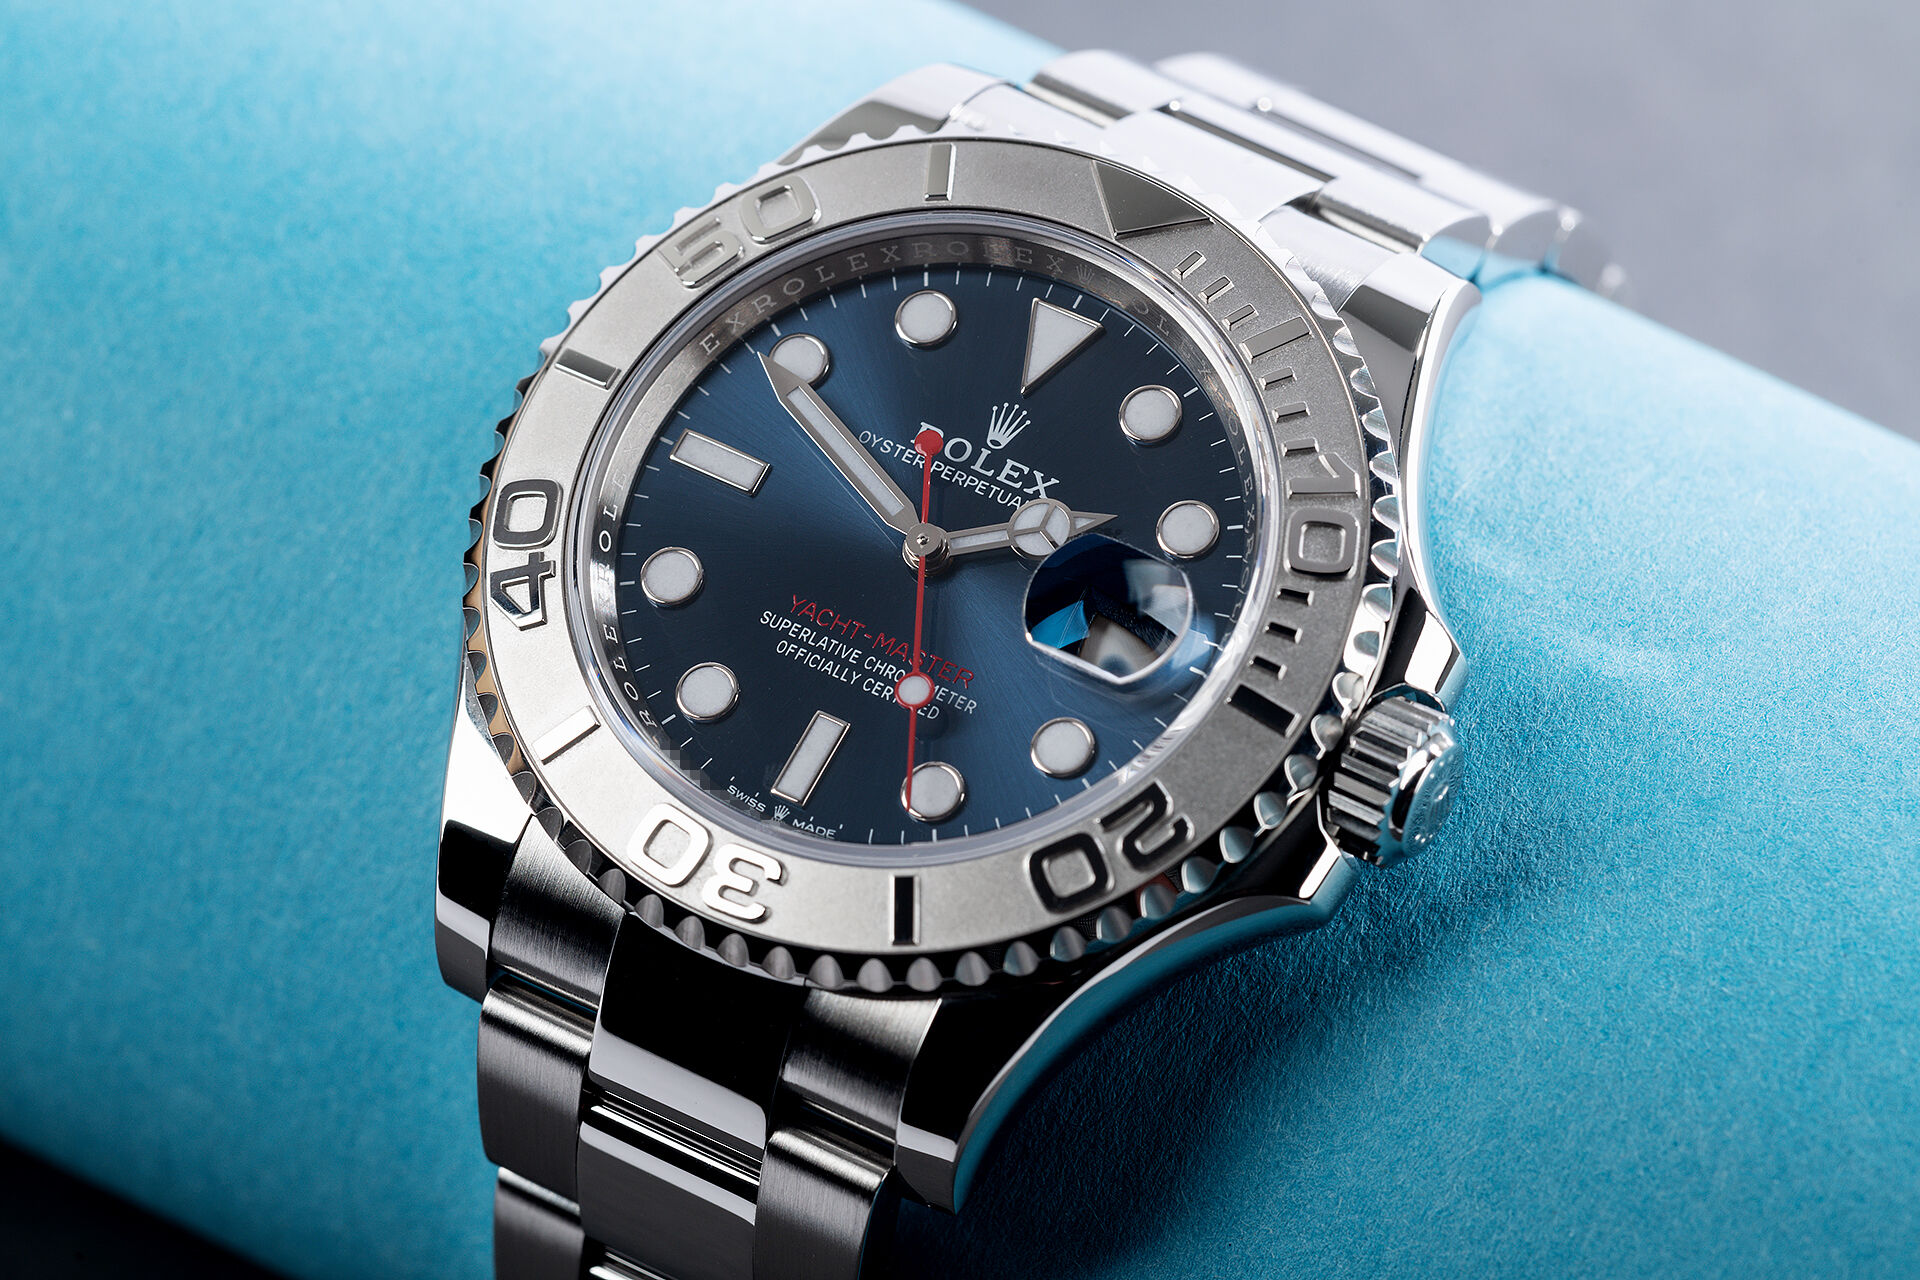 Rolex YachtMaster Watches ref 126622 5 Year Rolex Warranty The